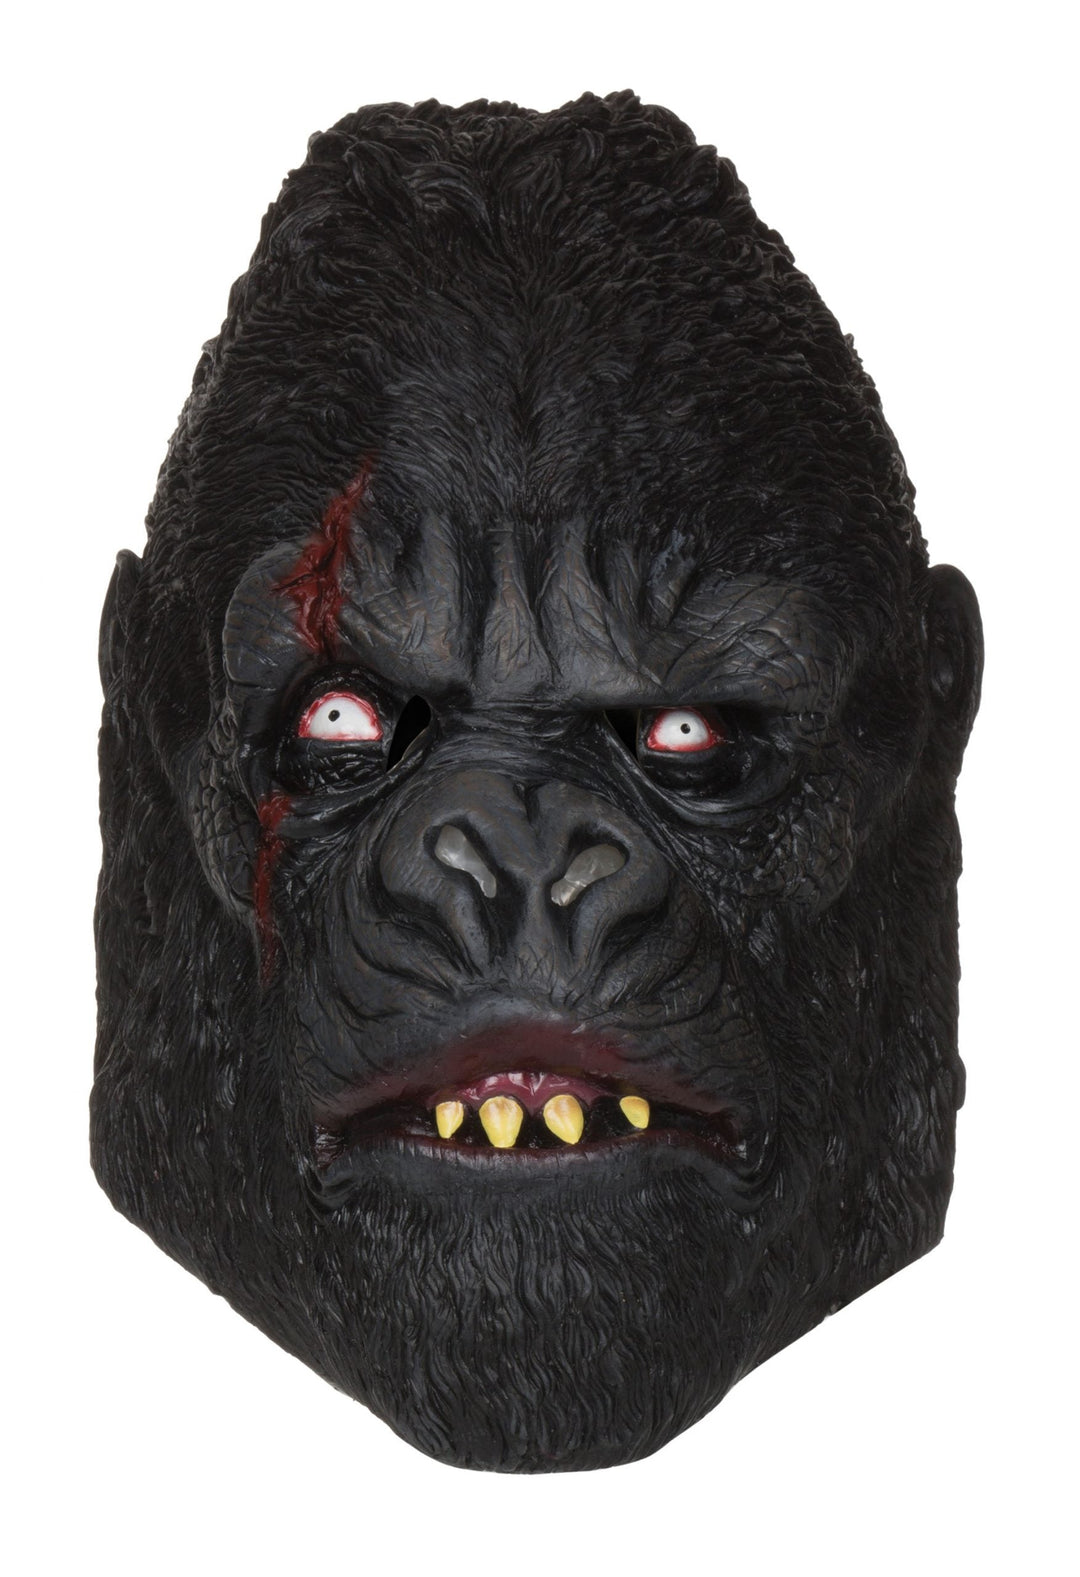 Zombie Gorilla Mask Rubber Masks Unisex_1